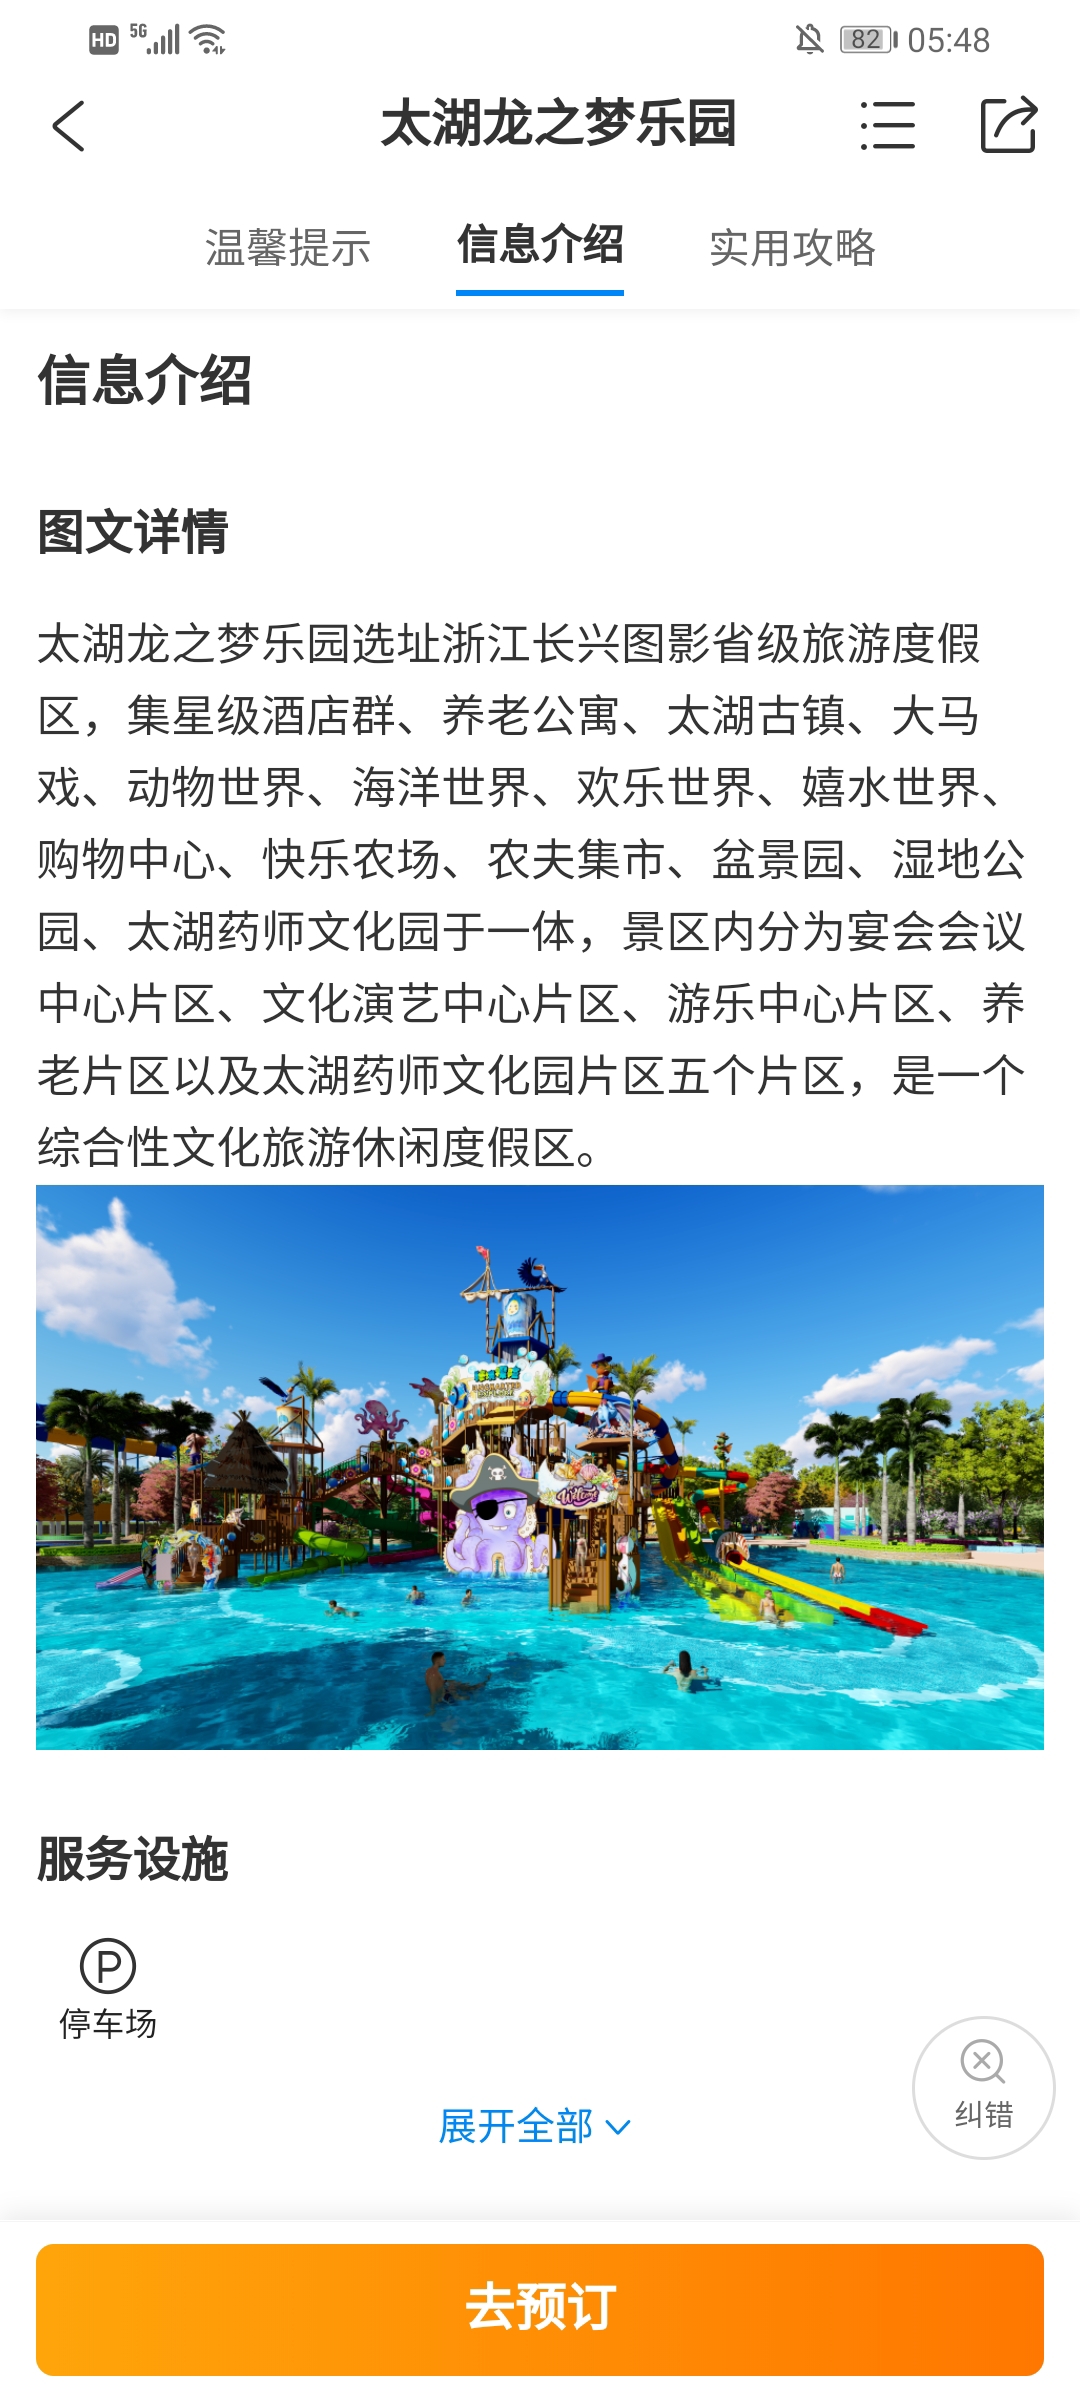 重装升级长宁龙之梦购物公园正式更名为龙之梦城市生活中心_热点 _ 文汇网